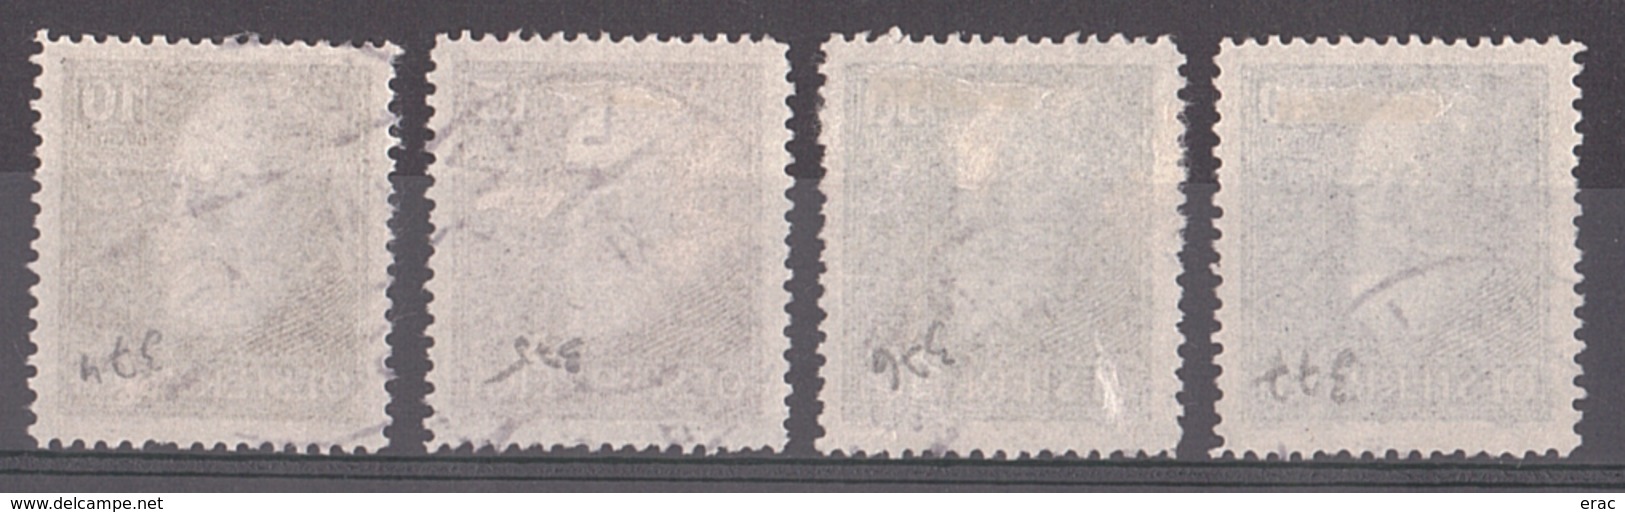 Autriche - 1928 - N° 374 à 377 Oblitérés - Président Hainish - Au Profit Des Orphelins De La Guerre - Cote 60 - Used Stamps